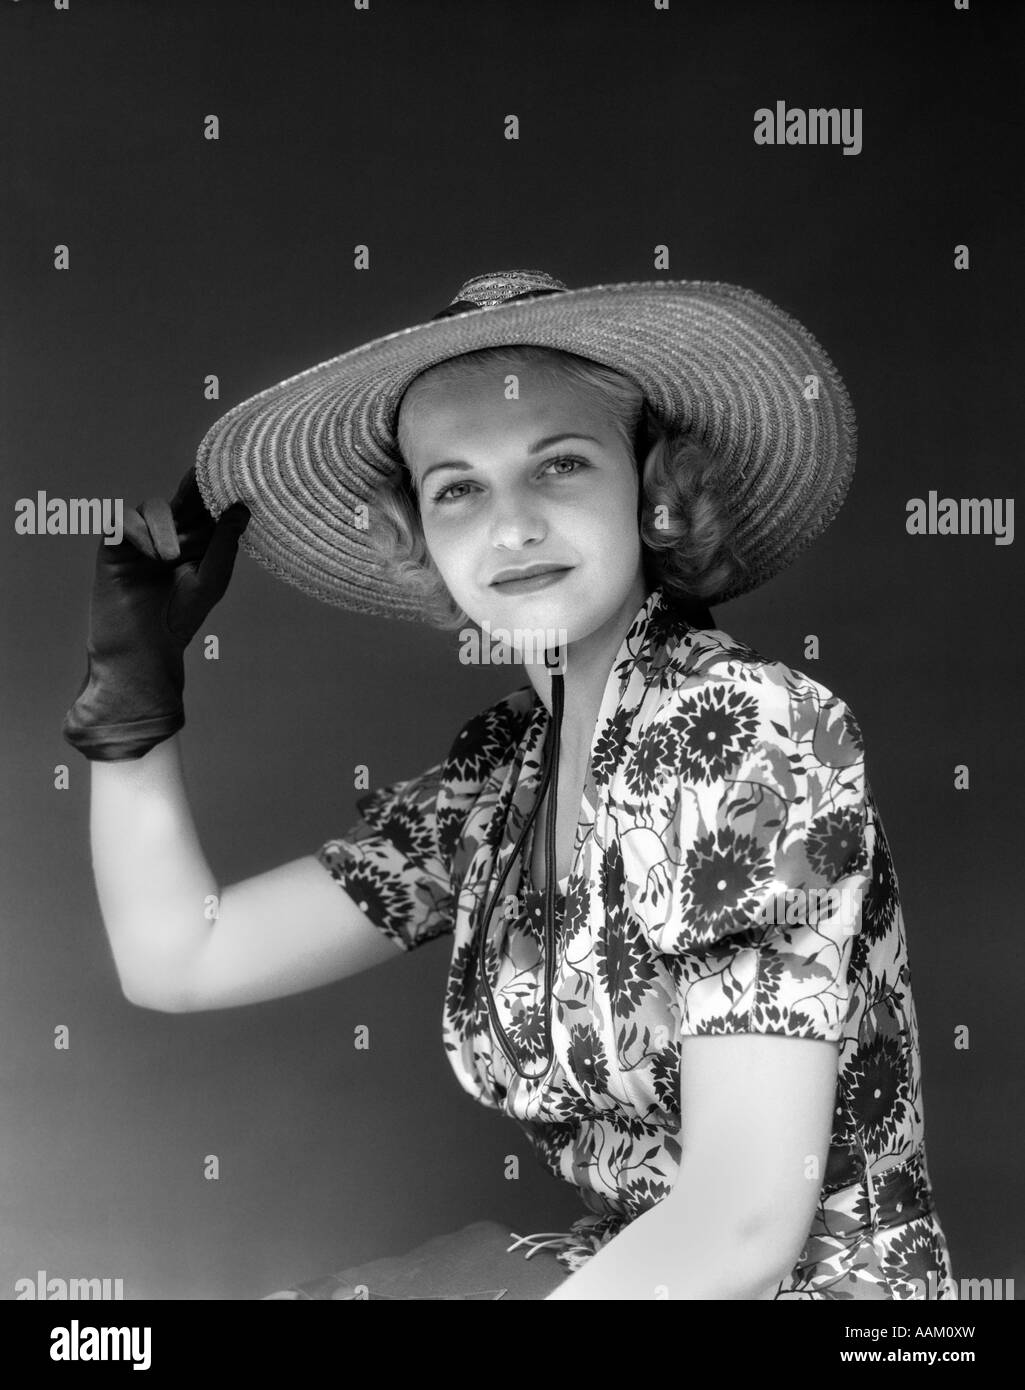 Années 1930 Années 1940 PORTRAIT Femme au chapeau de paille ROBE FLORAL  HAND HOLDING HAT PORTANT DES GANTS LOOKING AT CAMERA Photo Stock - Alamy